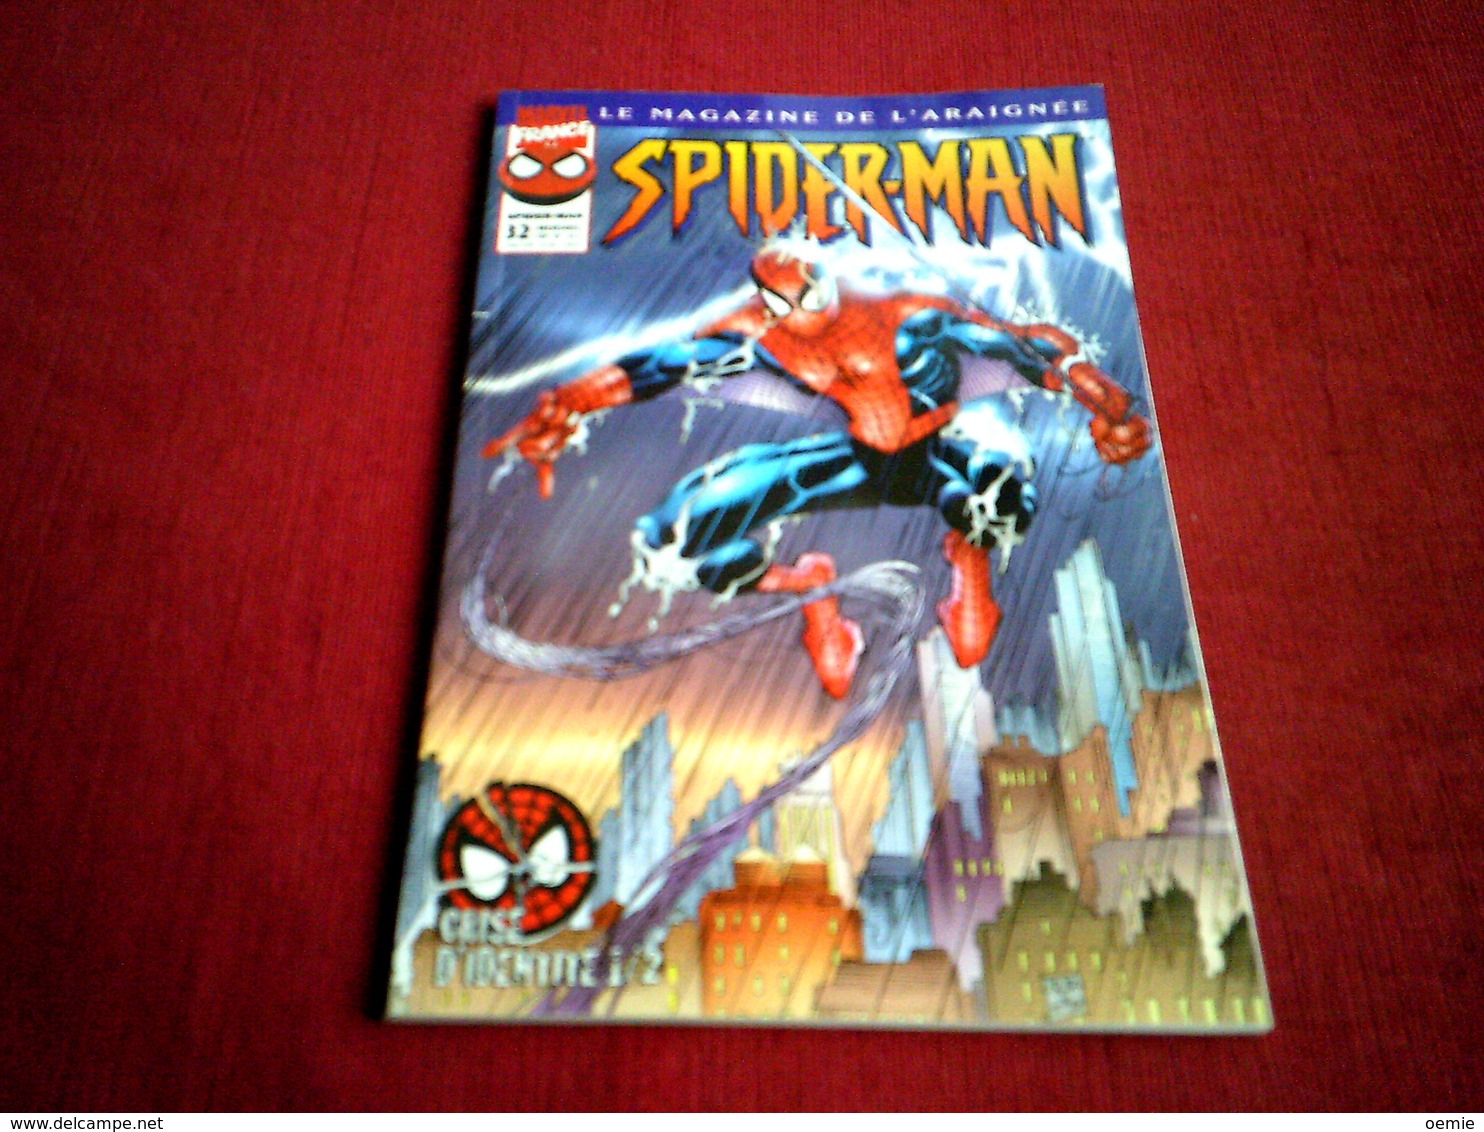 SPIDER MAN  LE MAGAZINE DE L'ARAIGNEE  N° 32   /  CRISE D'IDENTITE   1 / 2  /  SEPTEMBRE 1999 - Spider-Man